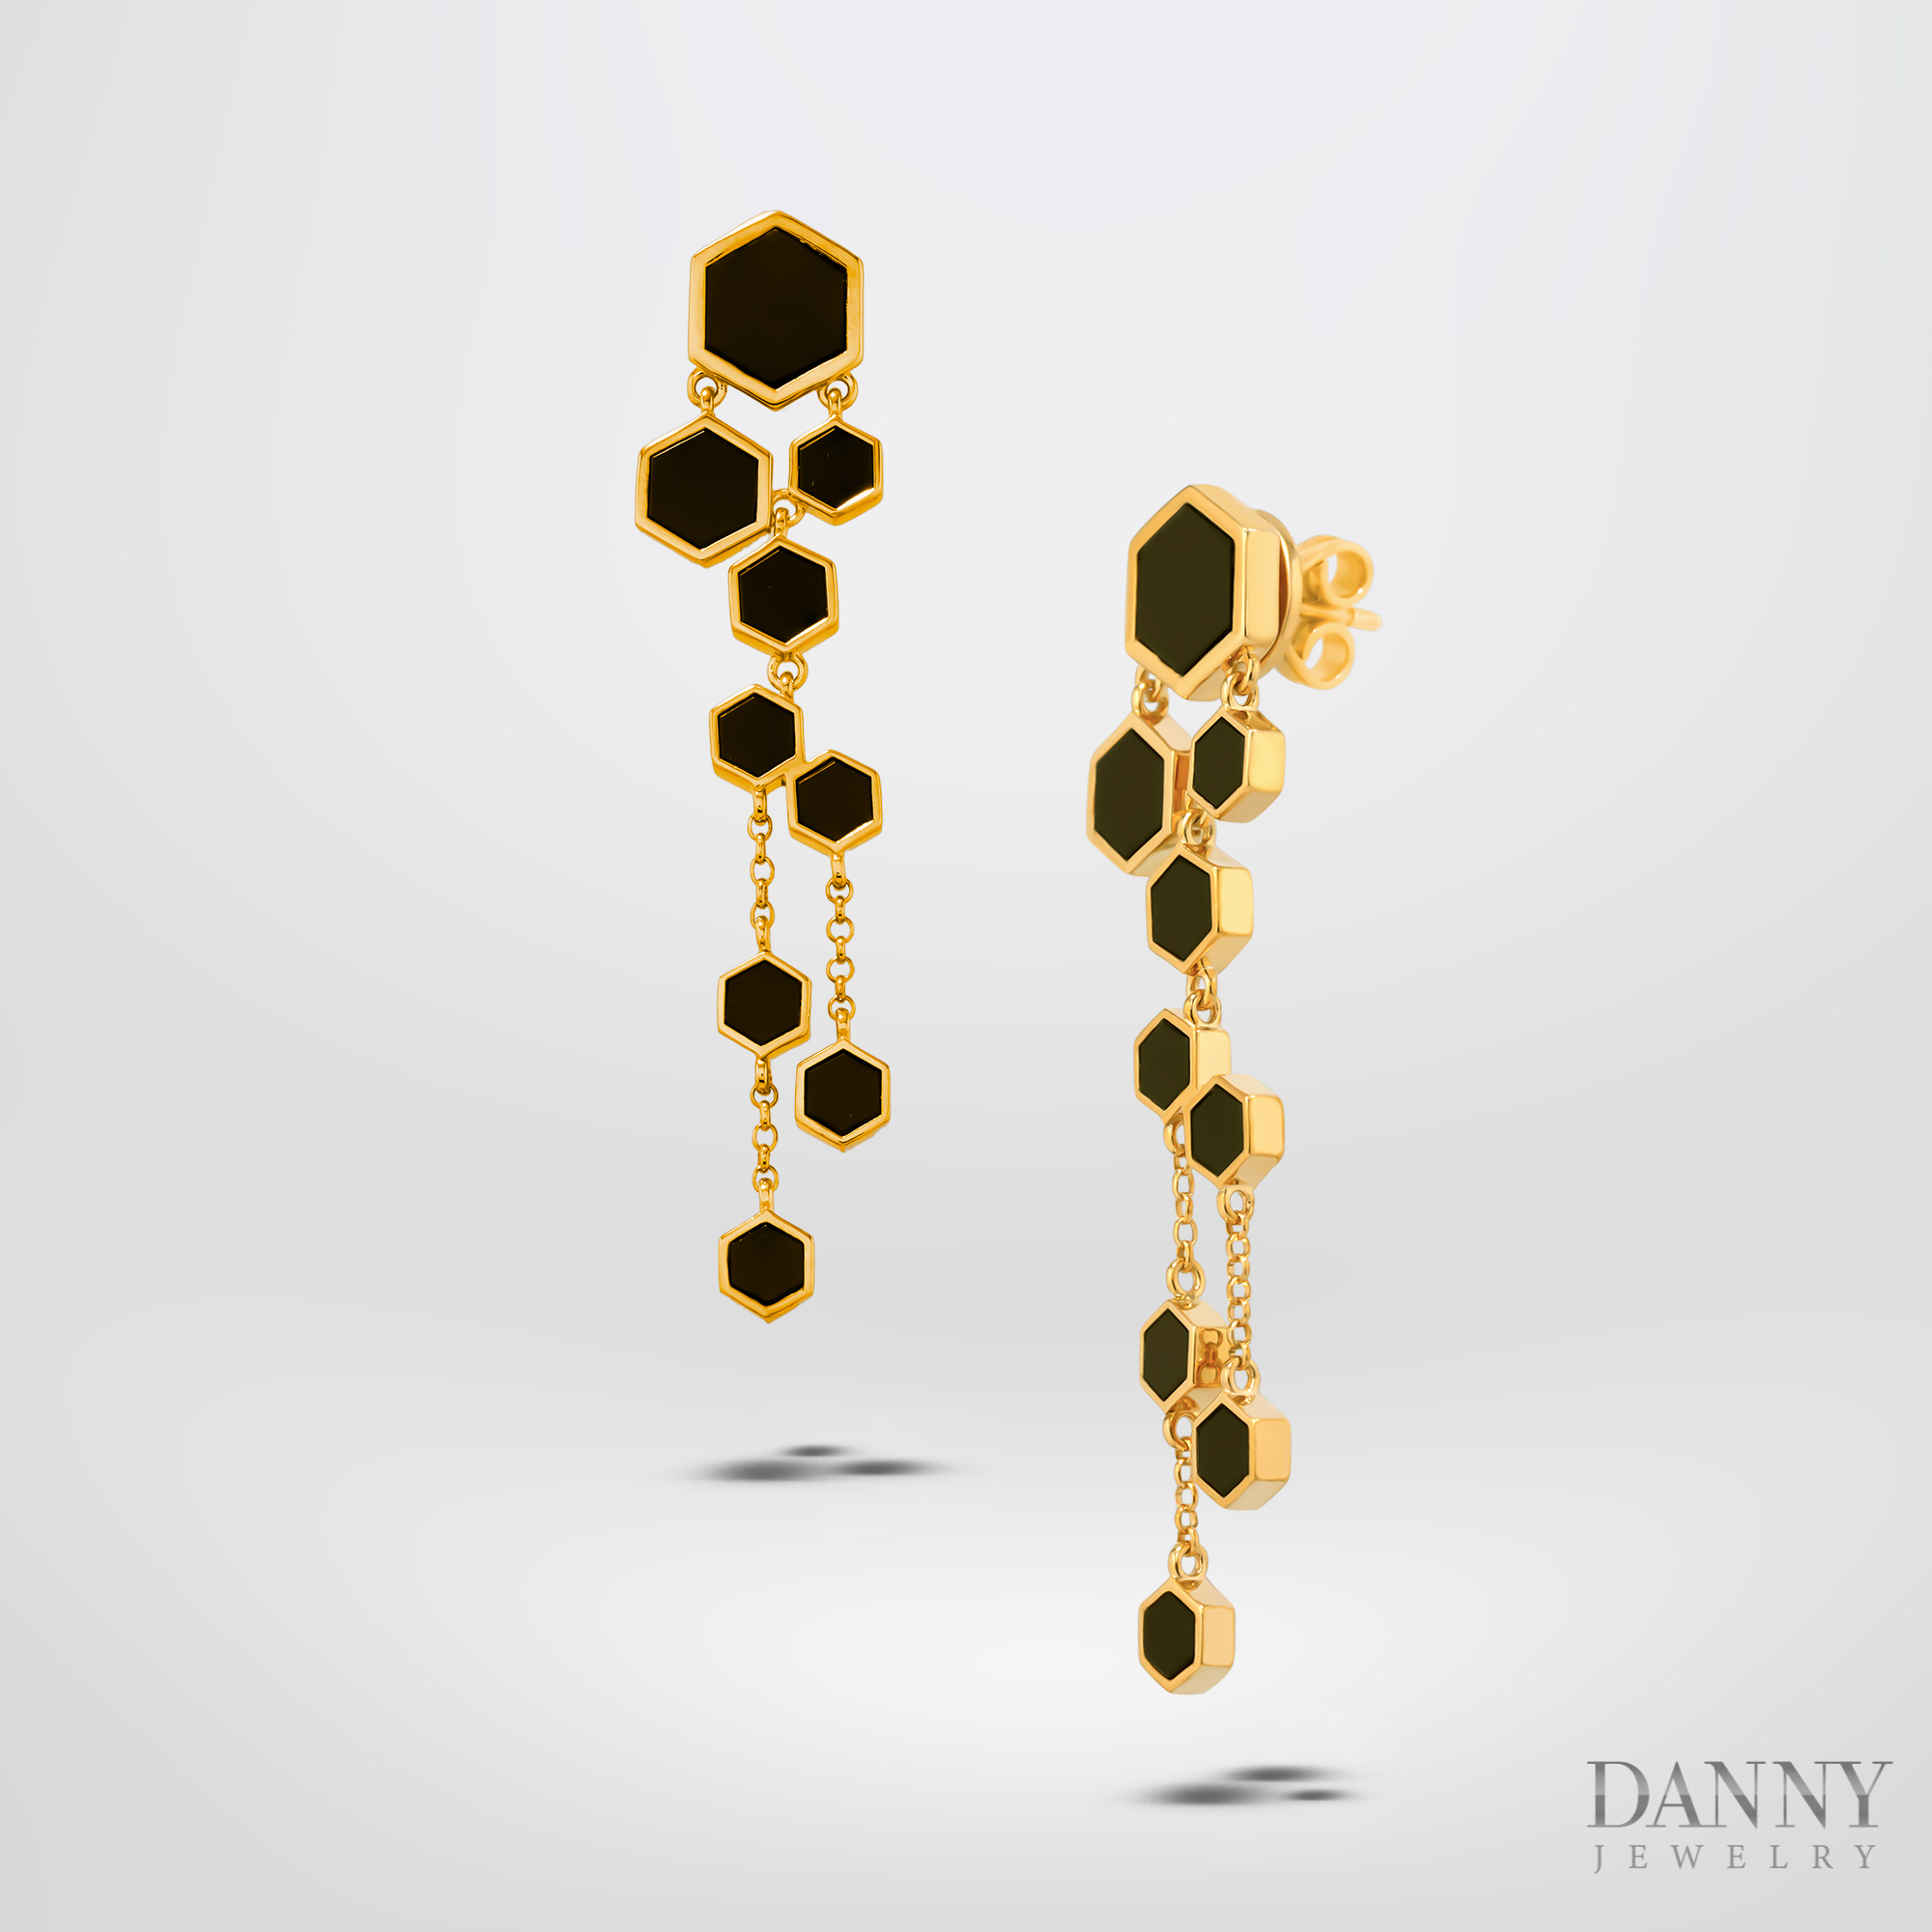 Bông Tai Nữ Danny Jewelry Bạc 925 Hình Lục Giác Đính Đá Onyx Xi Vàng  - BT0040